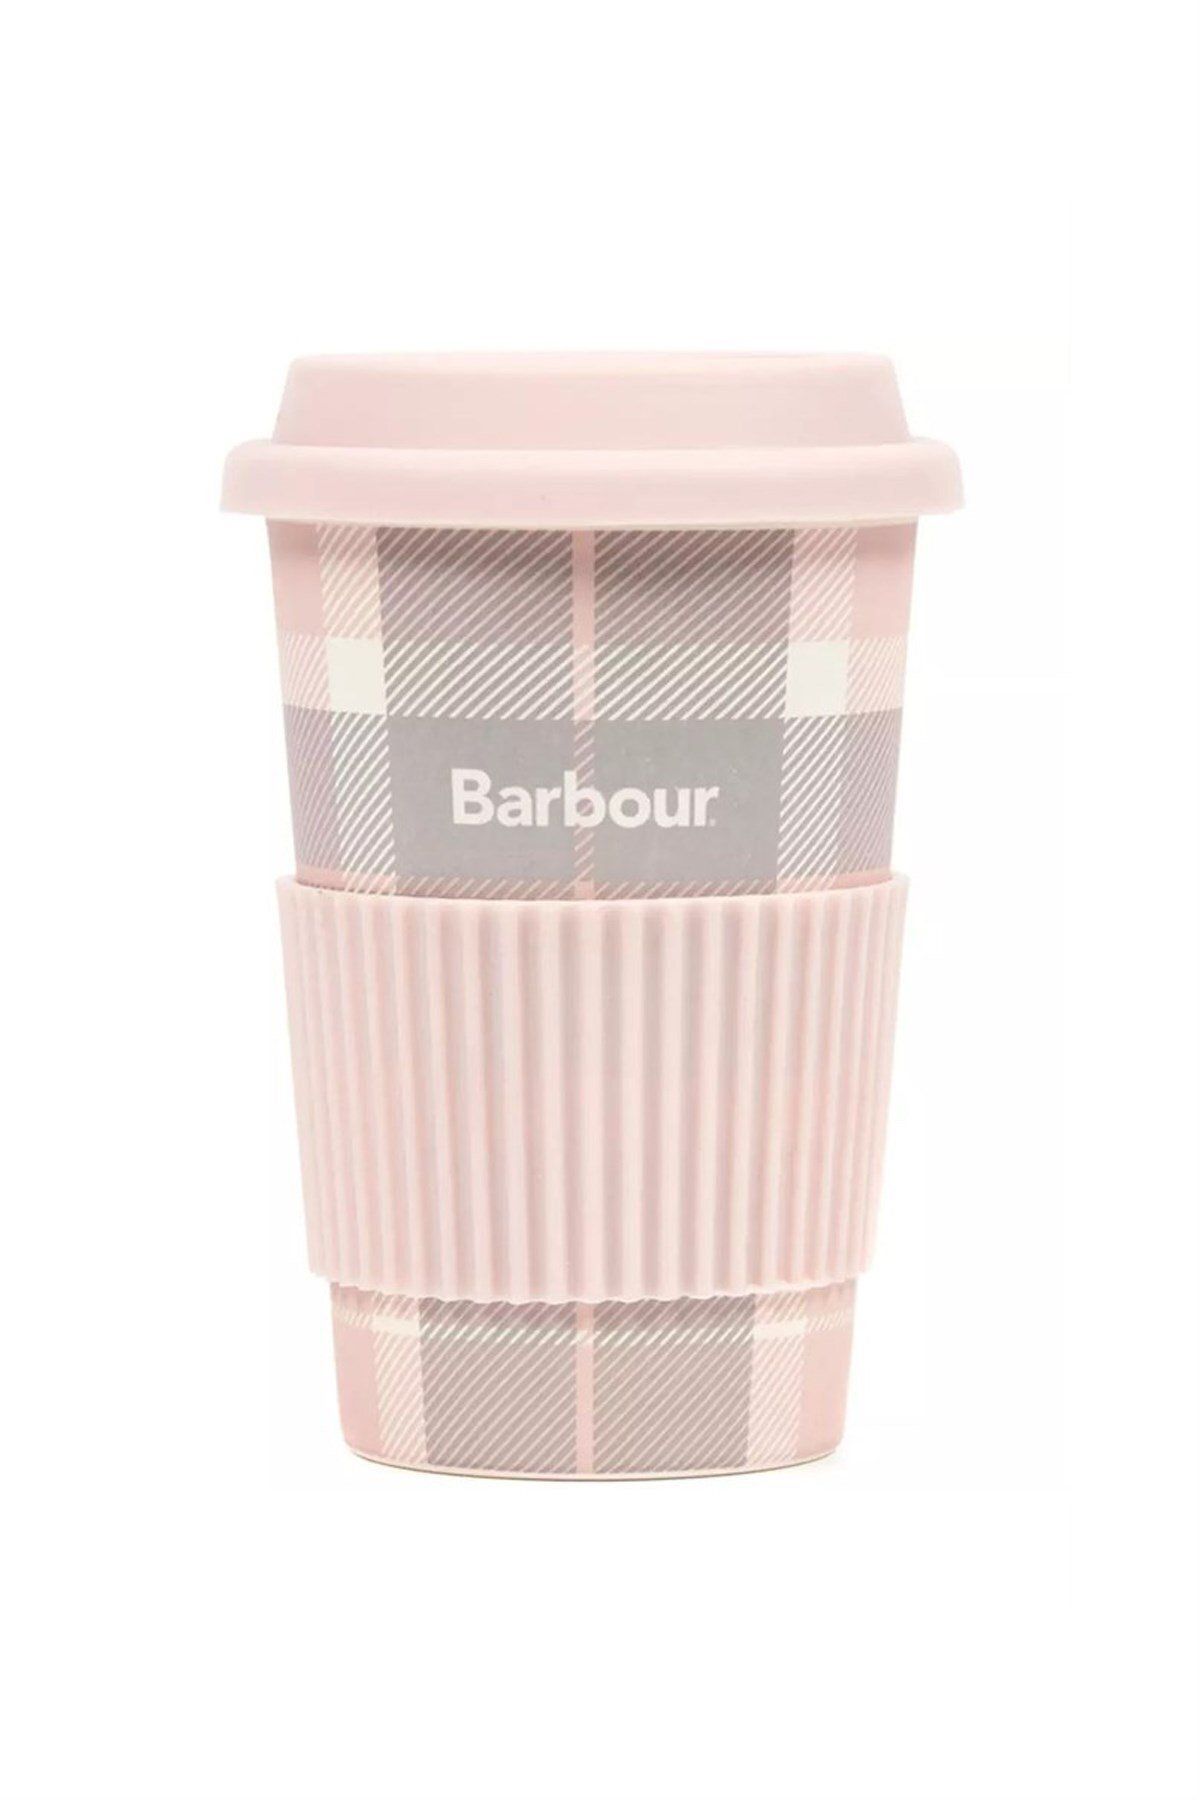 Barbour Tartan Seyahat Kupası Pı11 Pink/grey